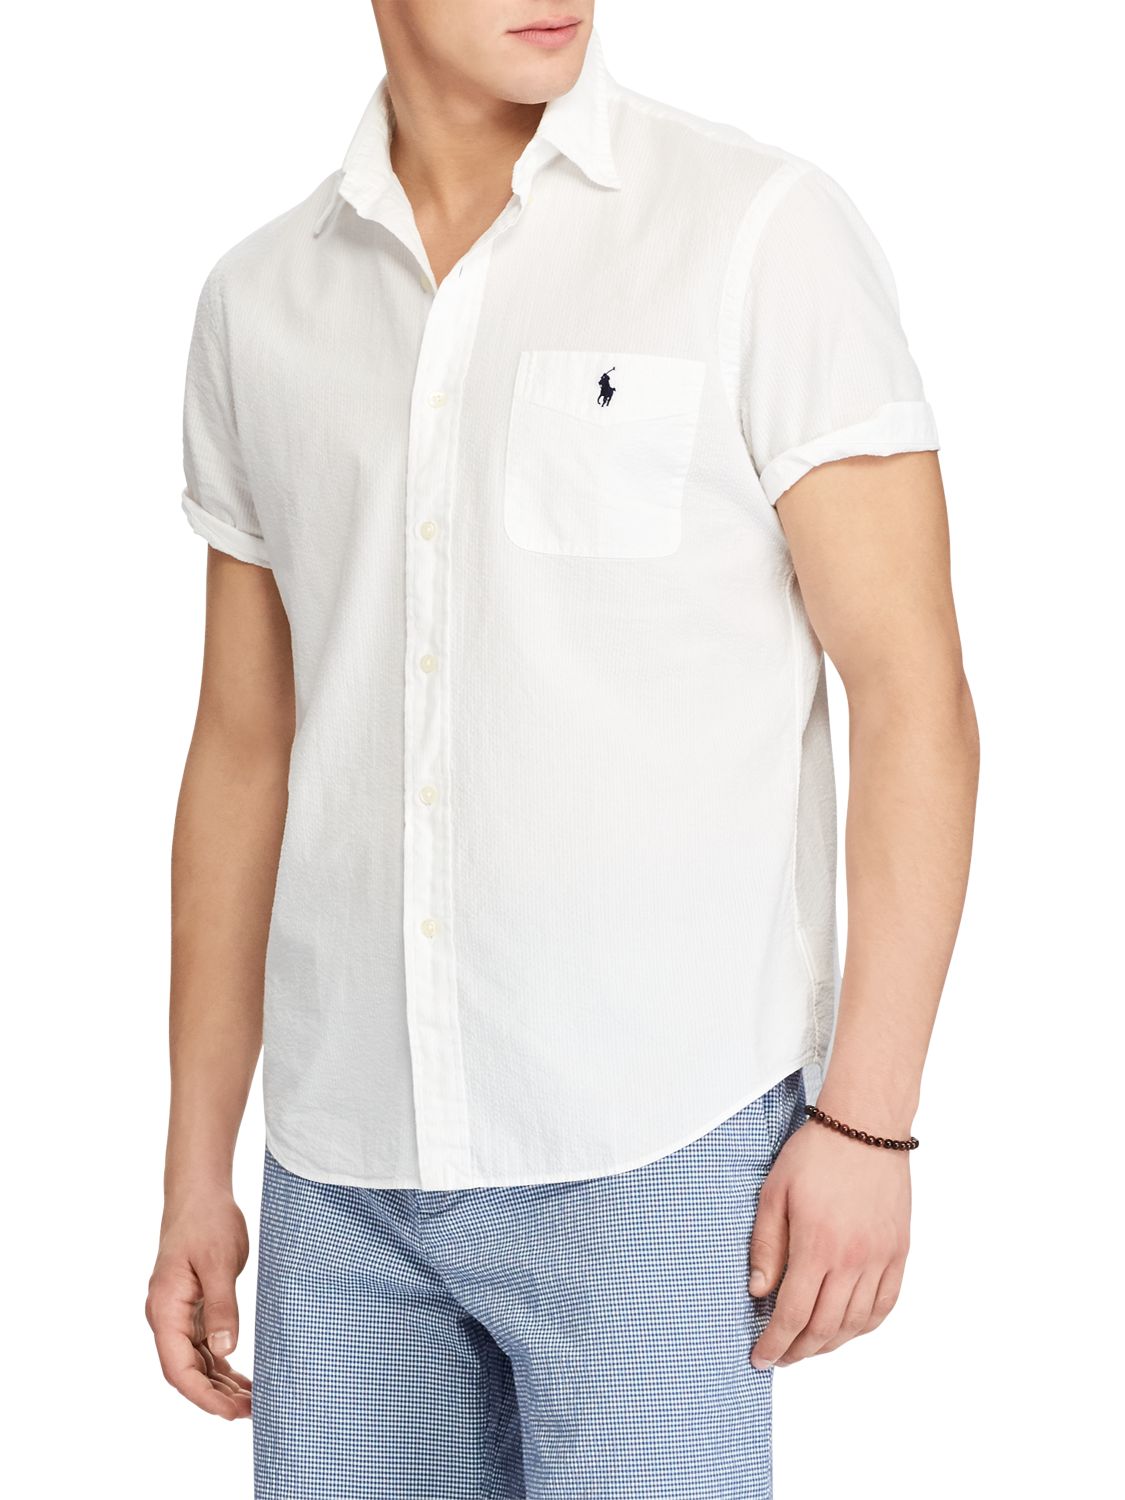 Polo Ralph Lauren Seersucker Short Sleeve Shirt at John Lewis & Partners